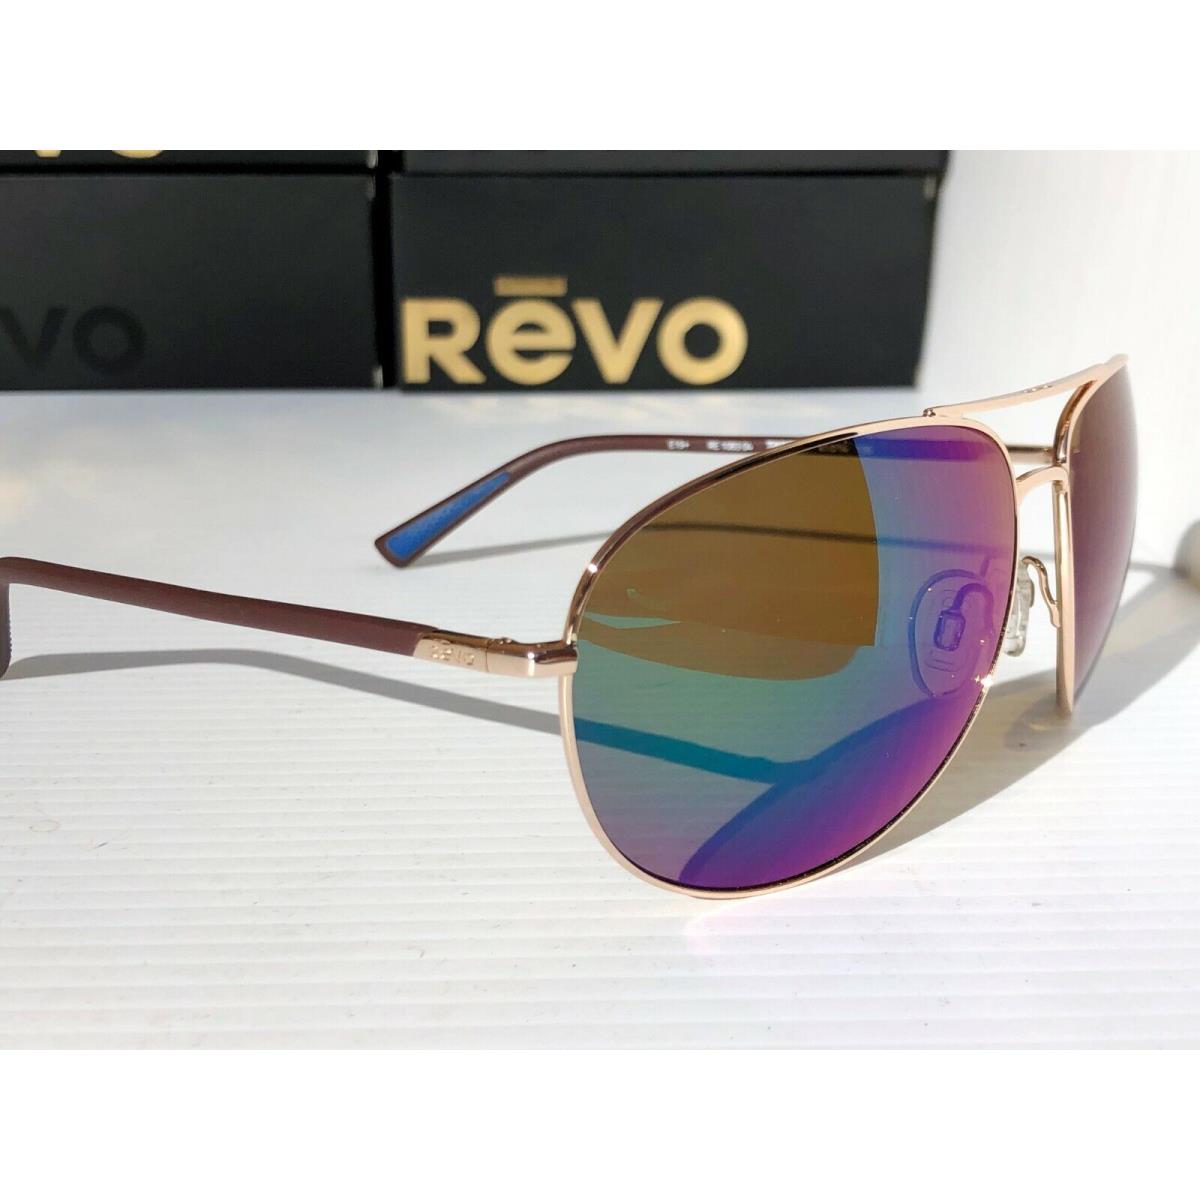 Revo sunglasses Tarquin - Gold Frame, Green Lens